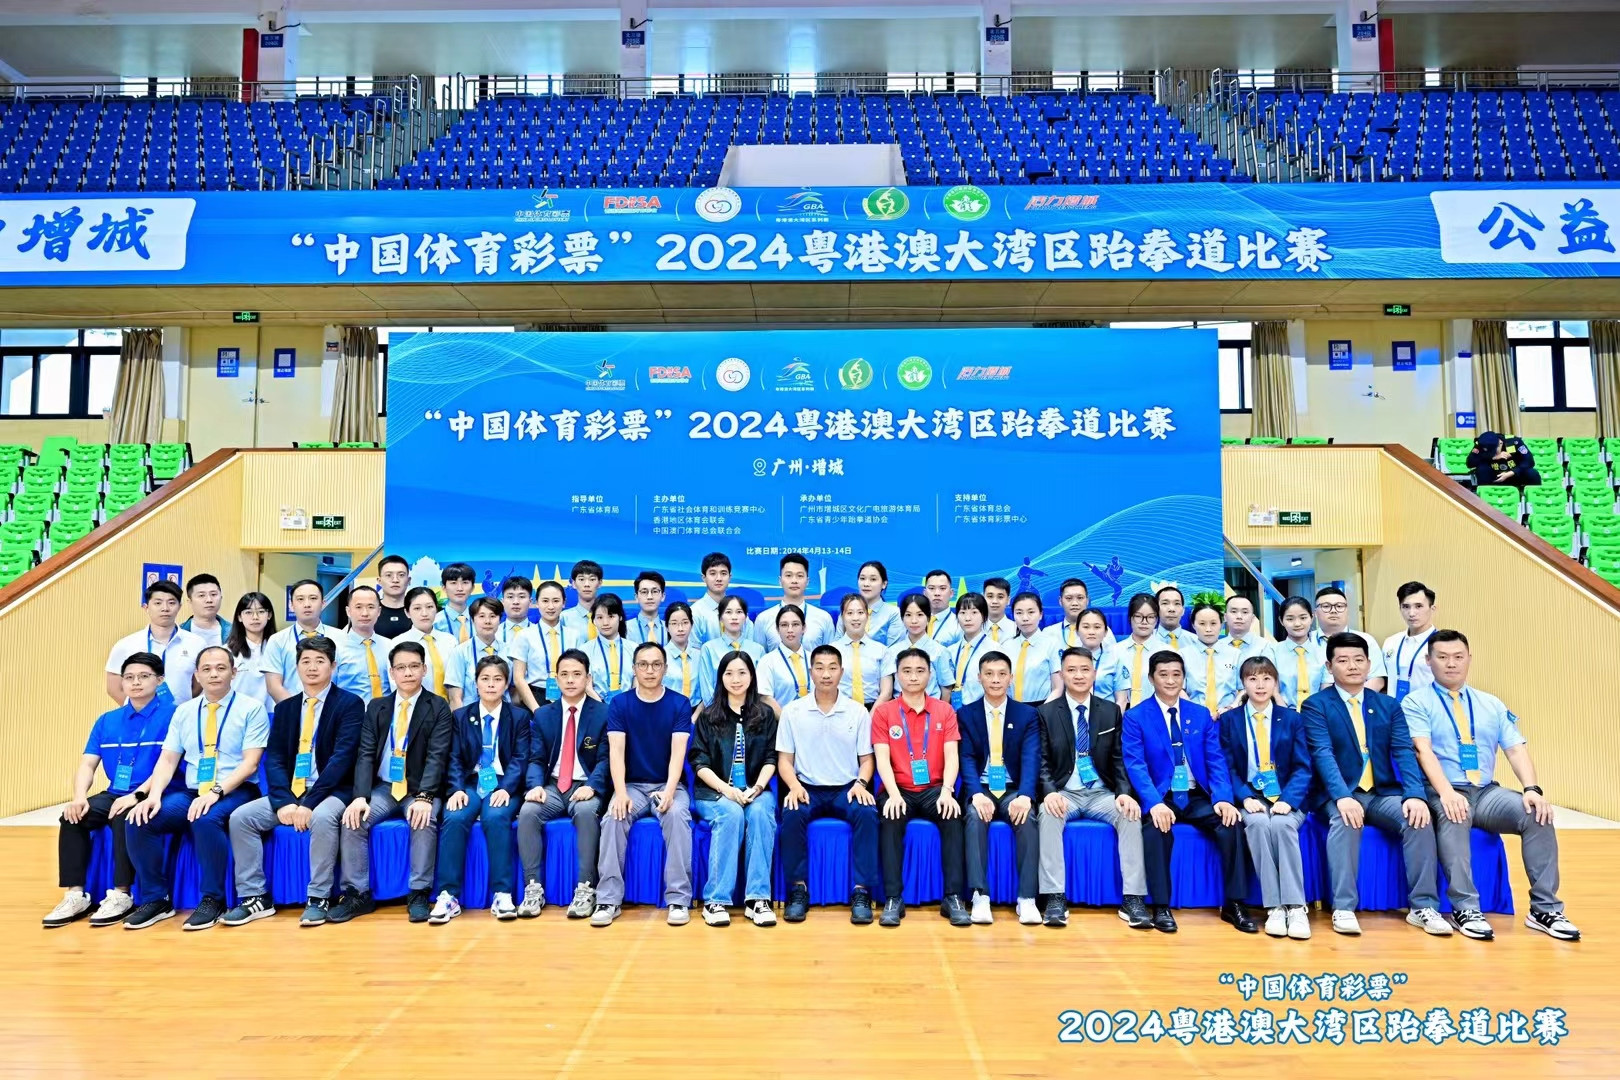 陈瑞欣（第一排右三）担任本次粤港澳大湾区跆拳道比赛副裁判长，图片由受访者提供